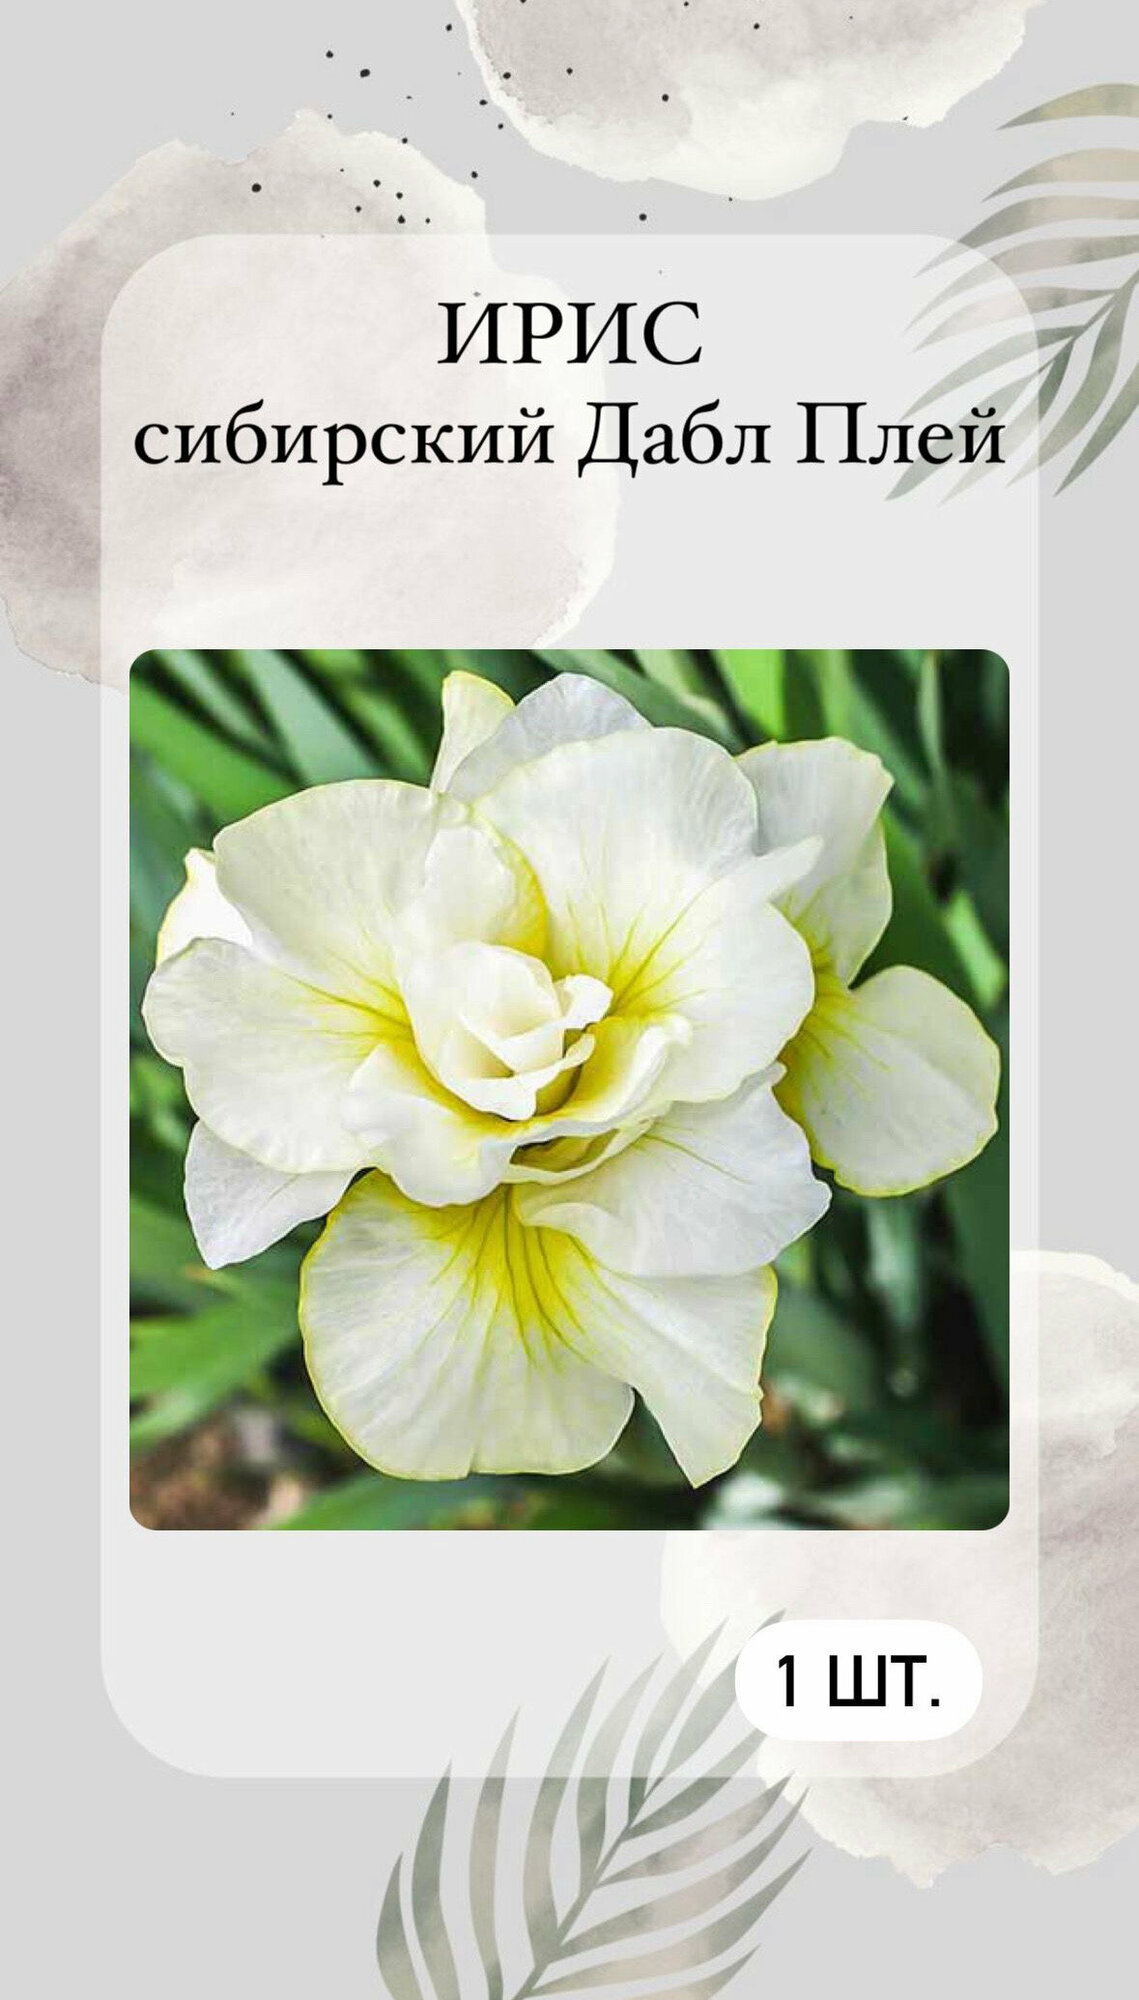 Ирис корневой Дабл Плей многолетние цветы 1 